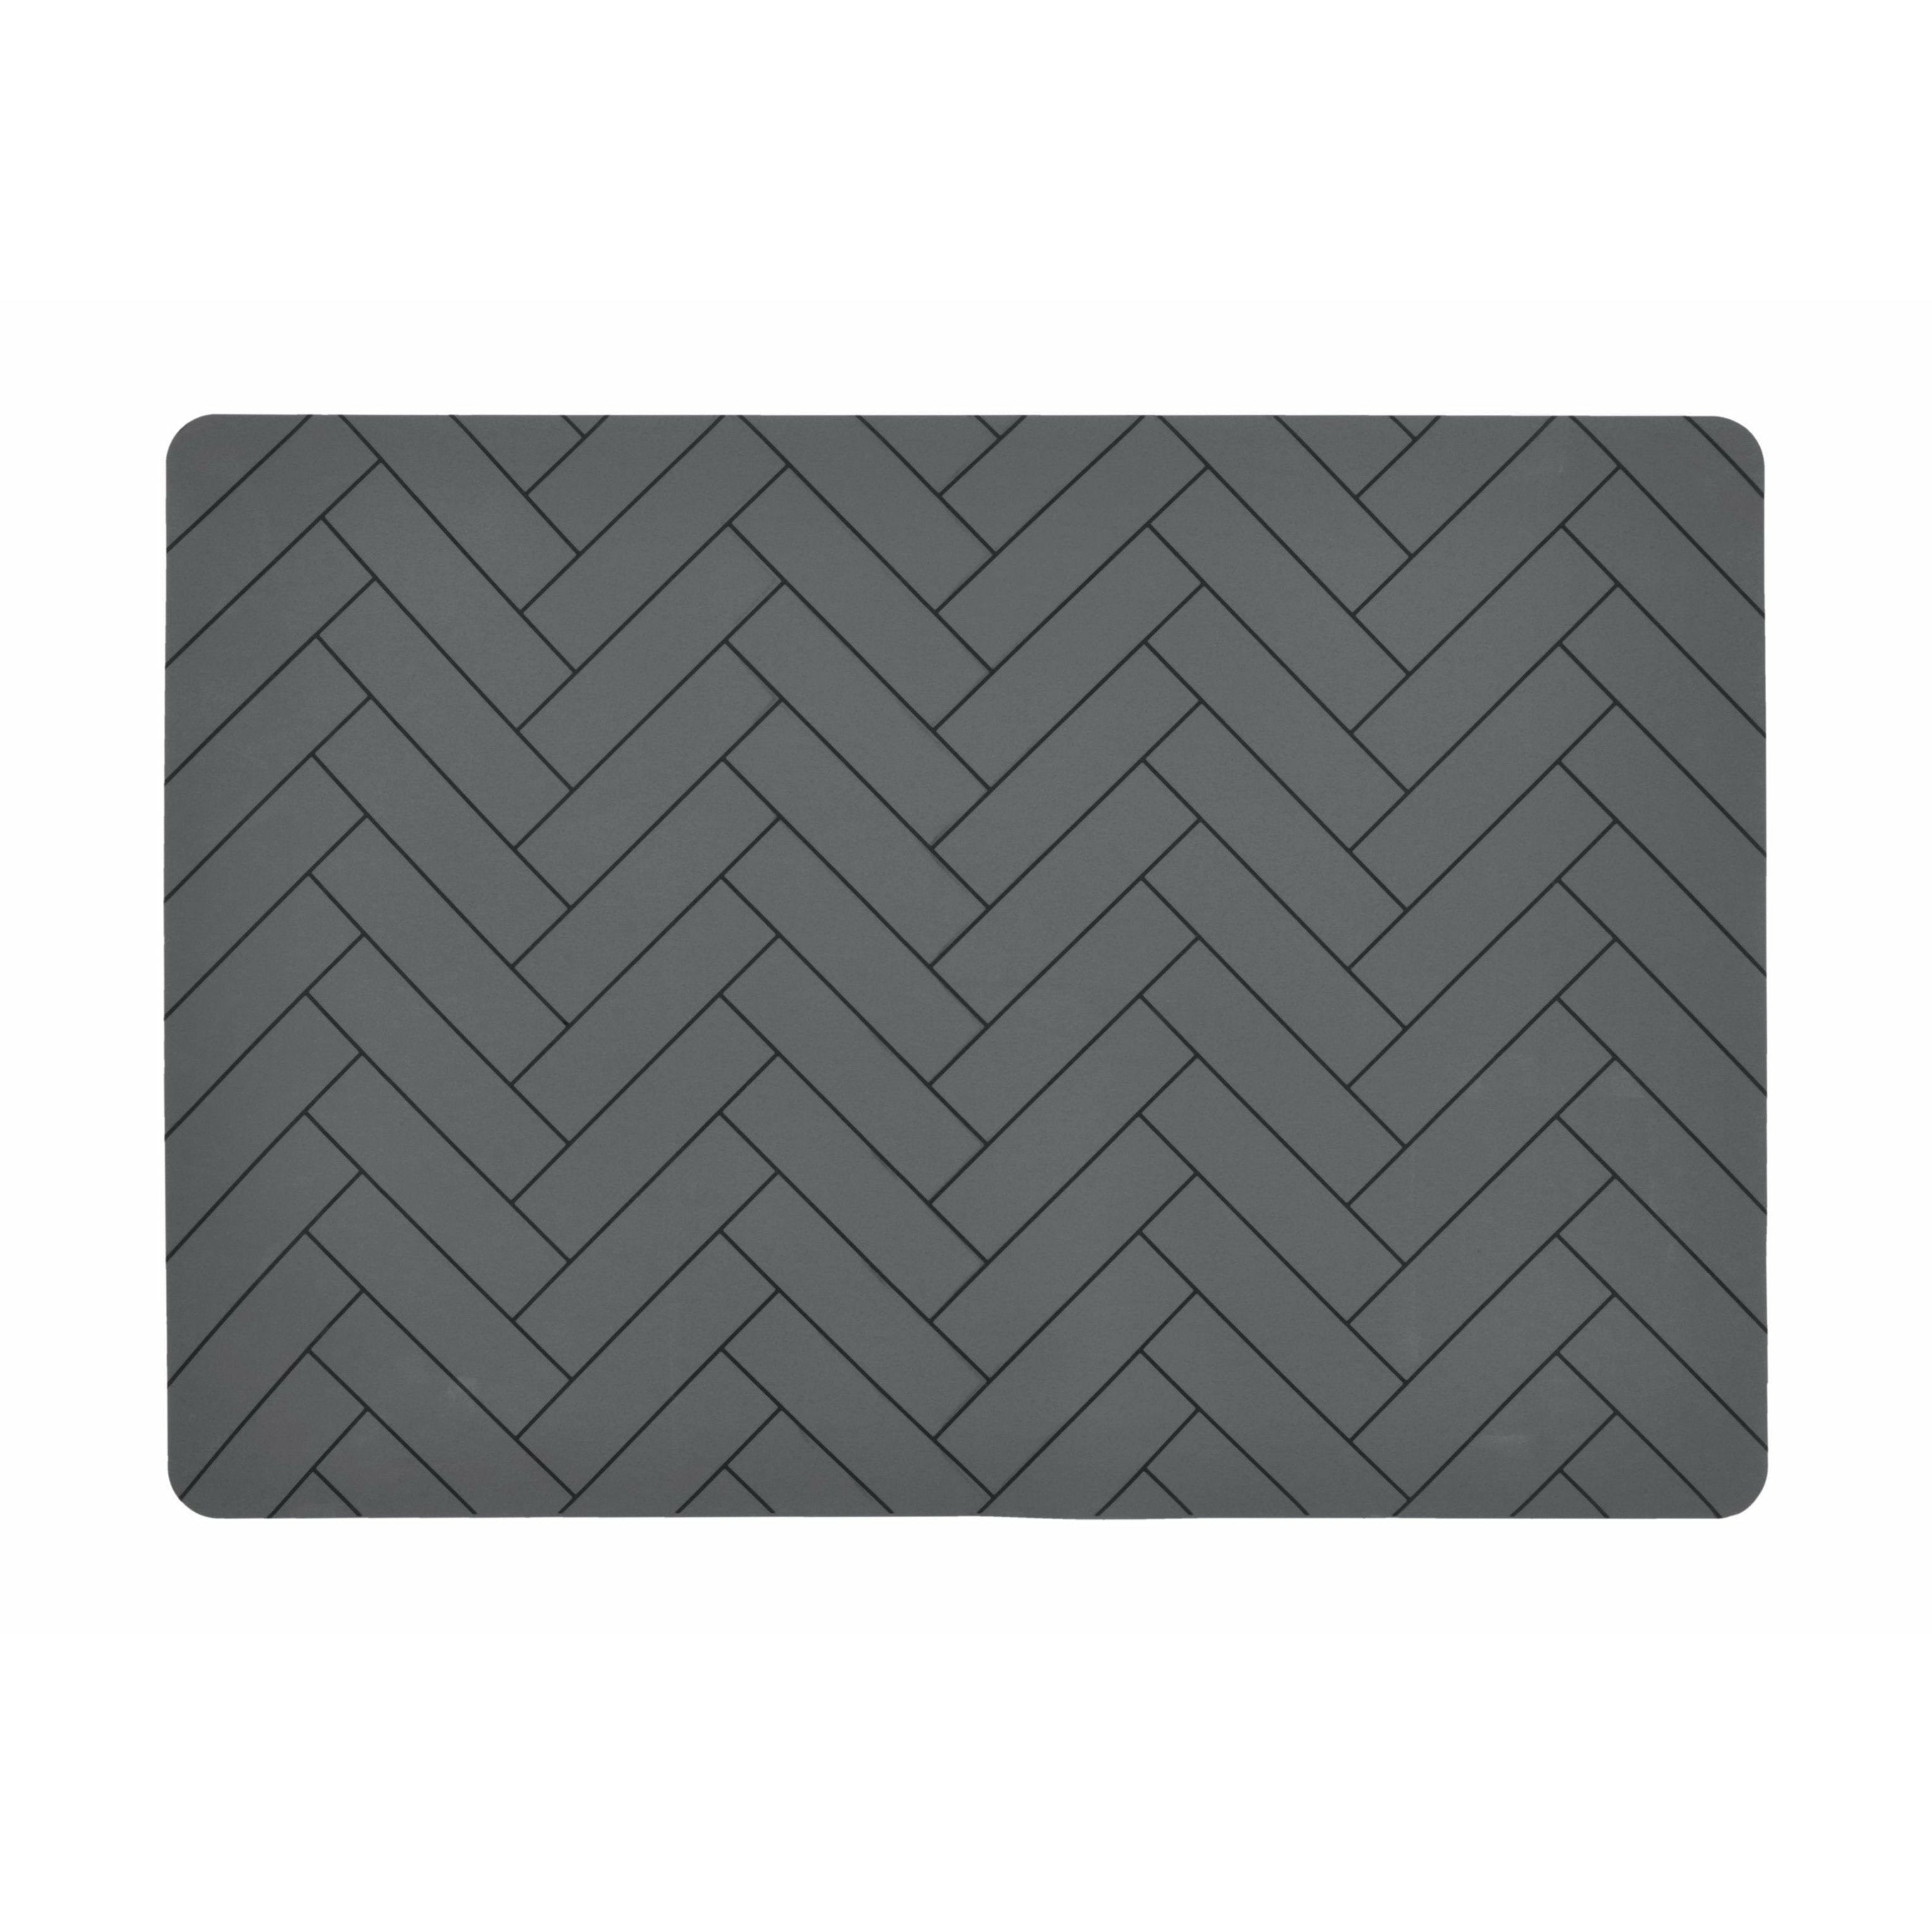 Södahl Tiles Placemat 33x48, grå